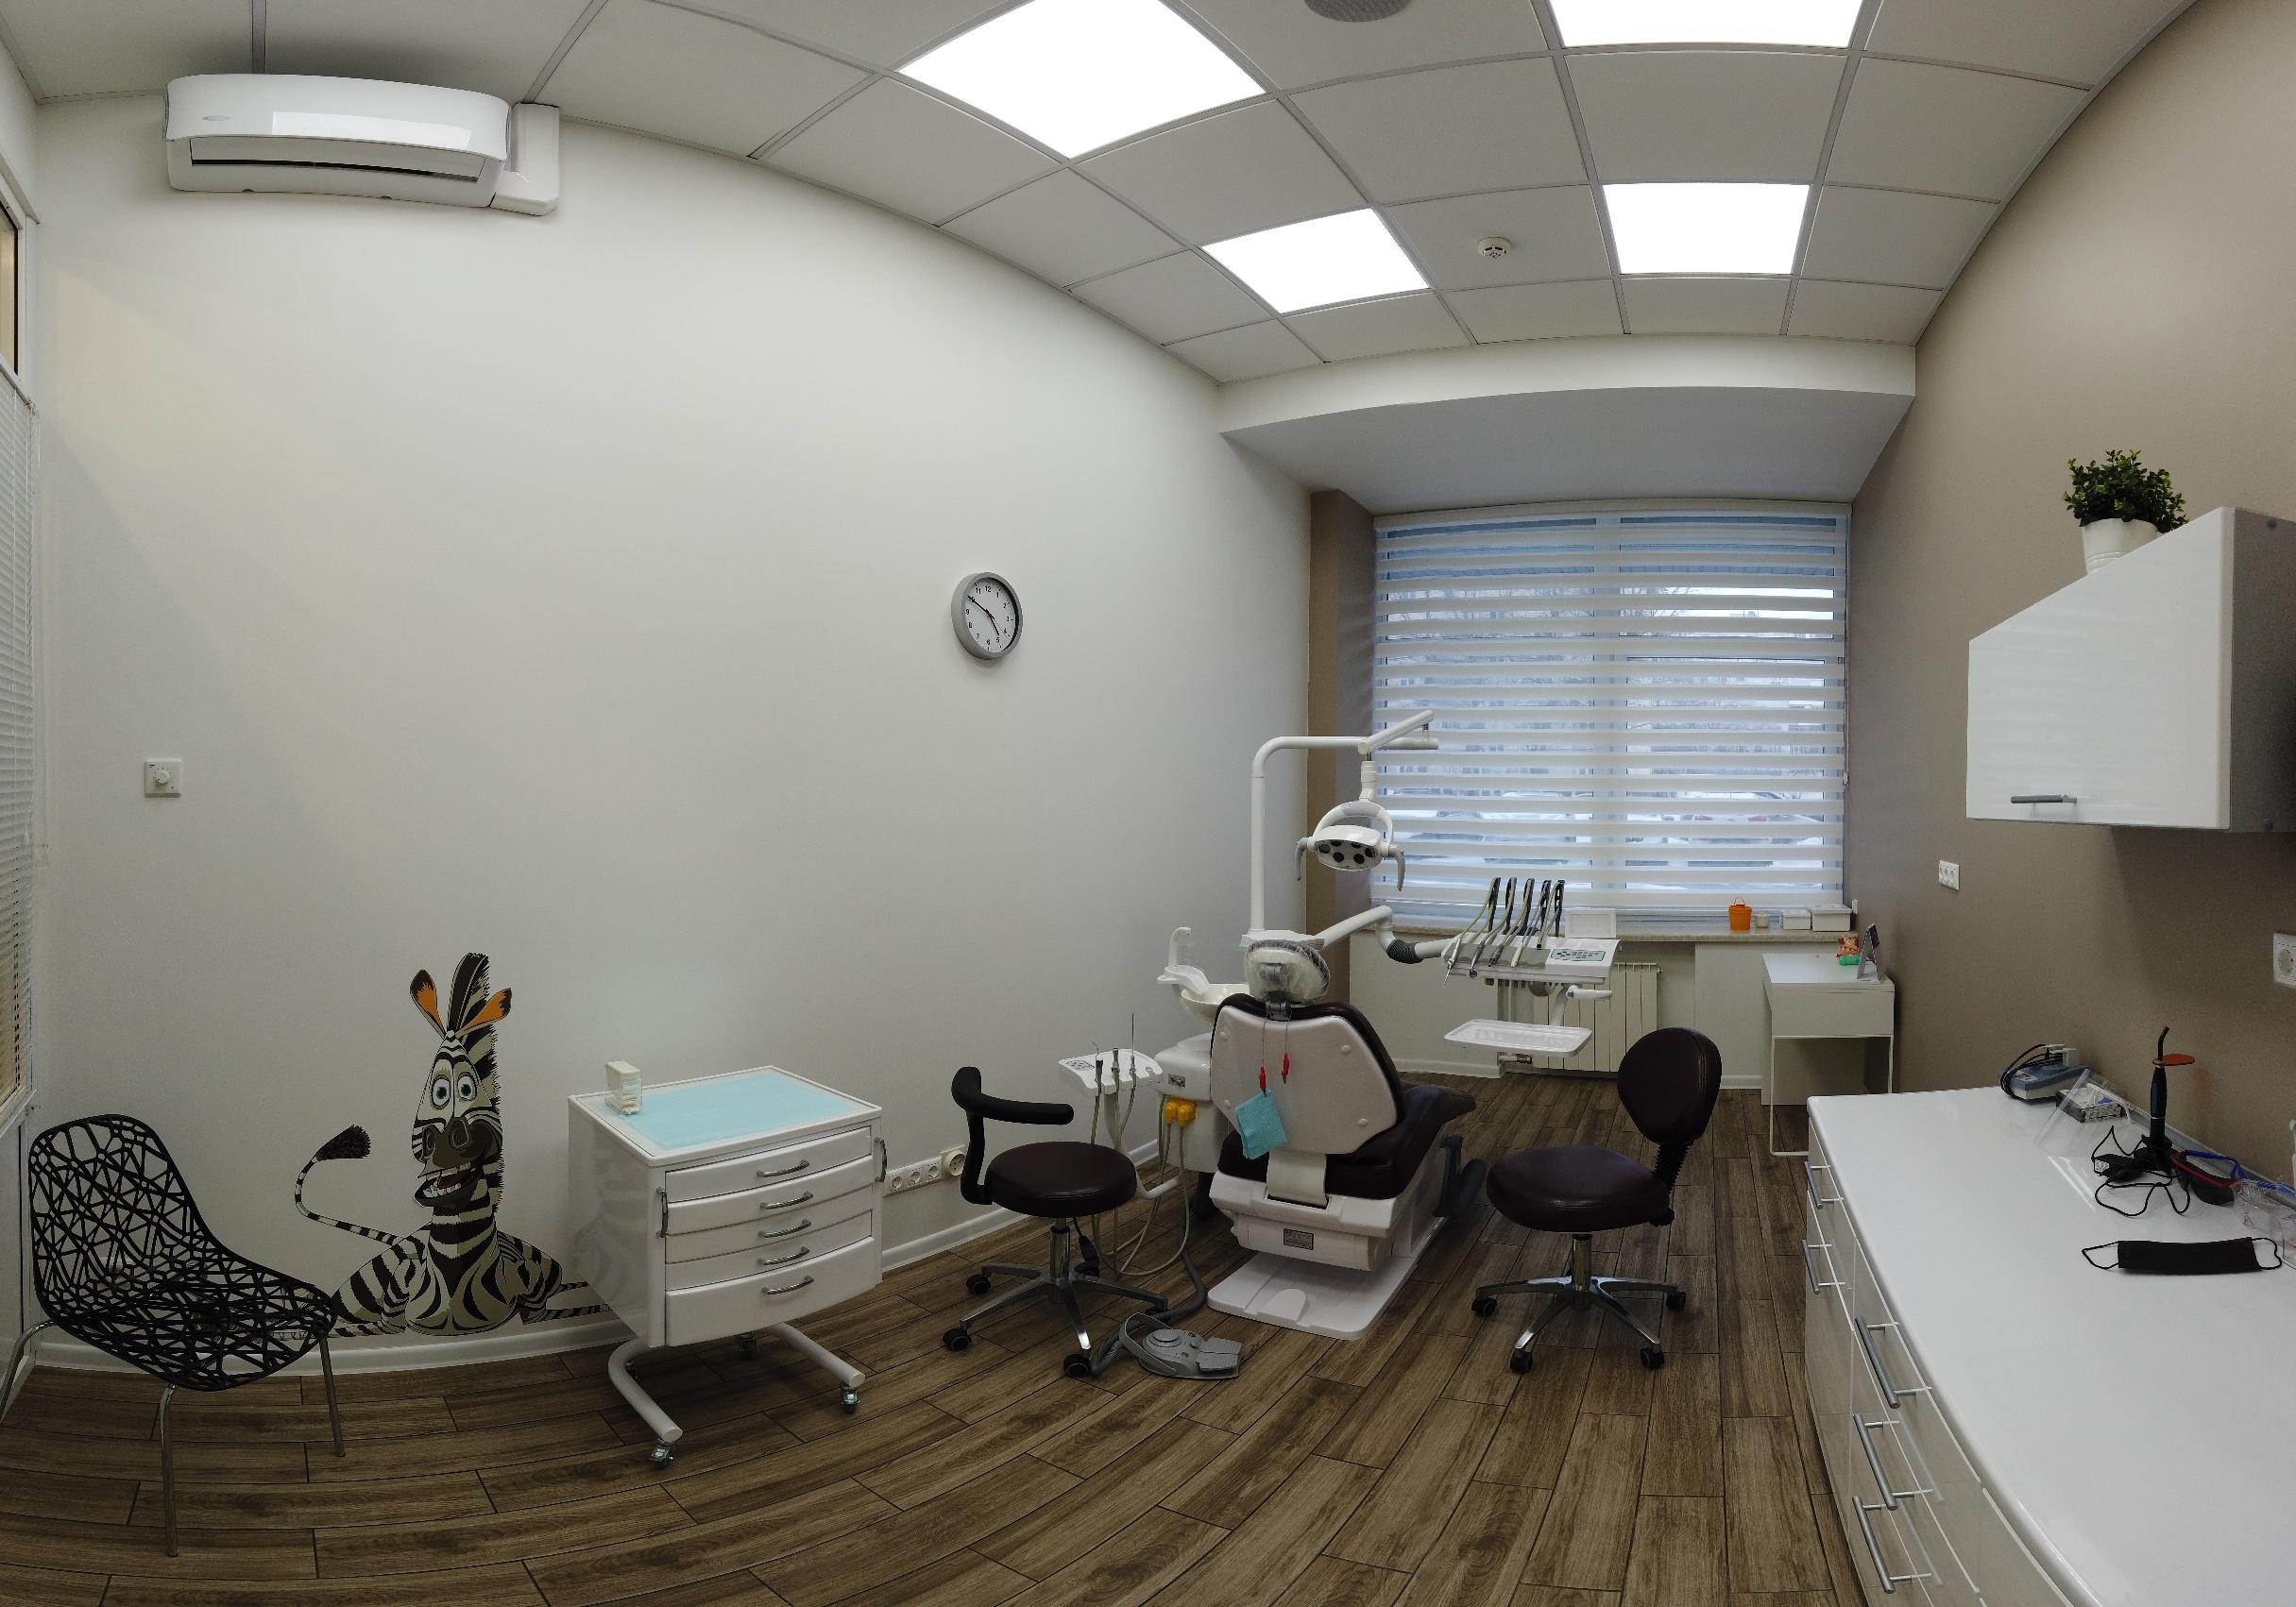 План стоматологического кабинета на 2 кресла